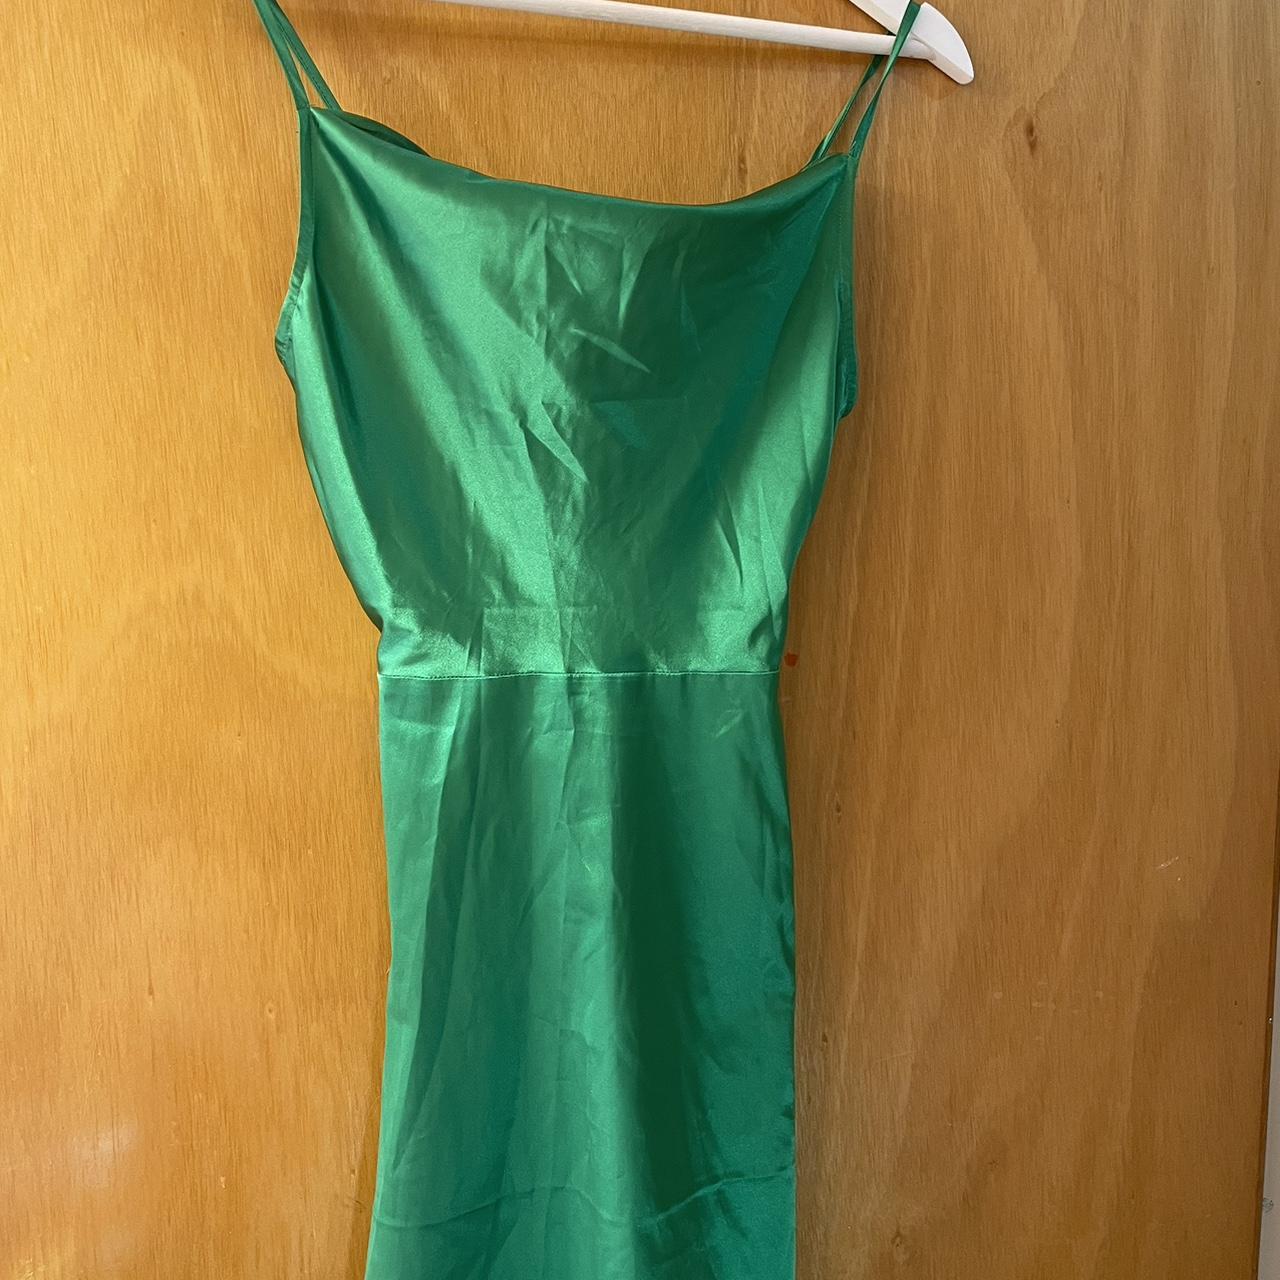 NEON GREEN mini DRESS, fits size 4-6. H&M brand,... - Depop